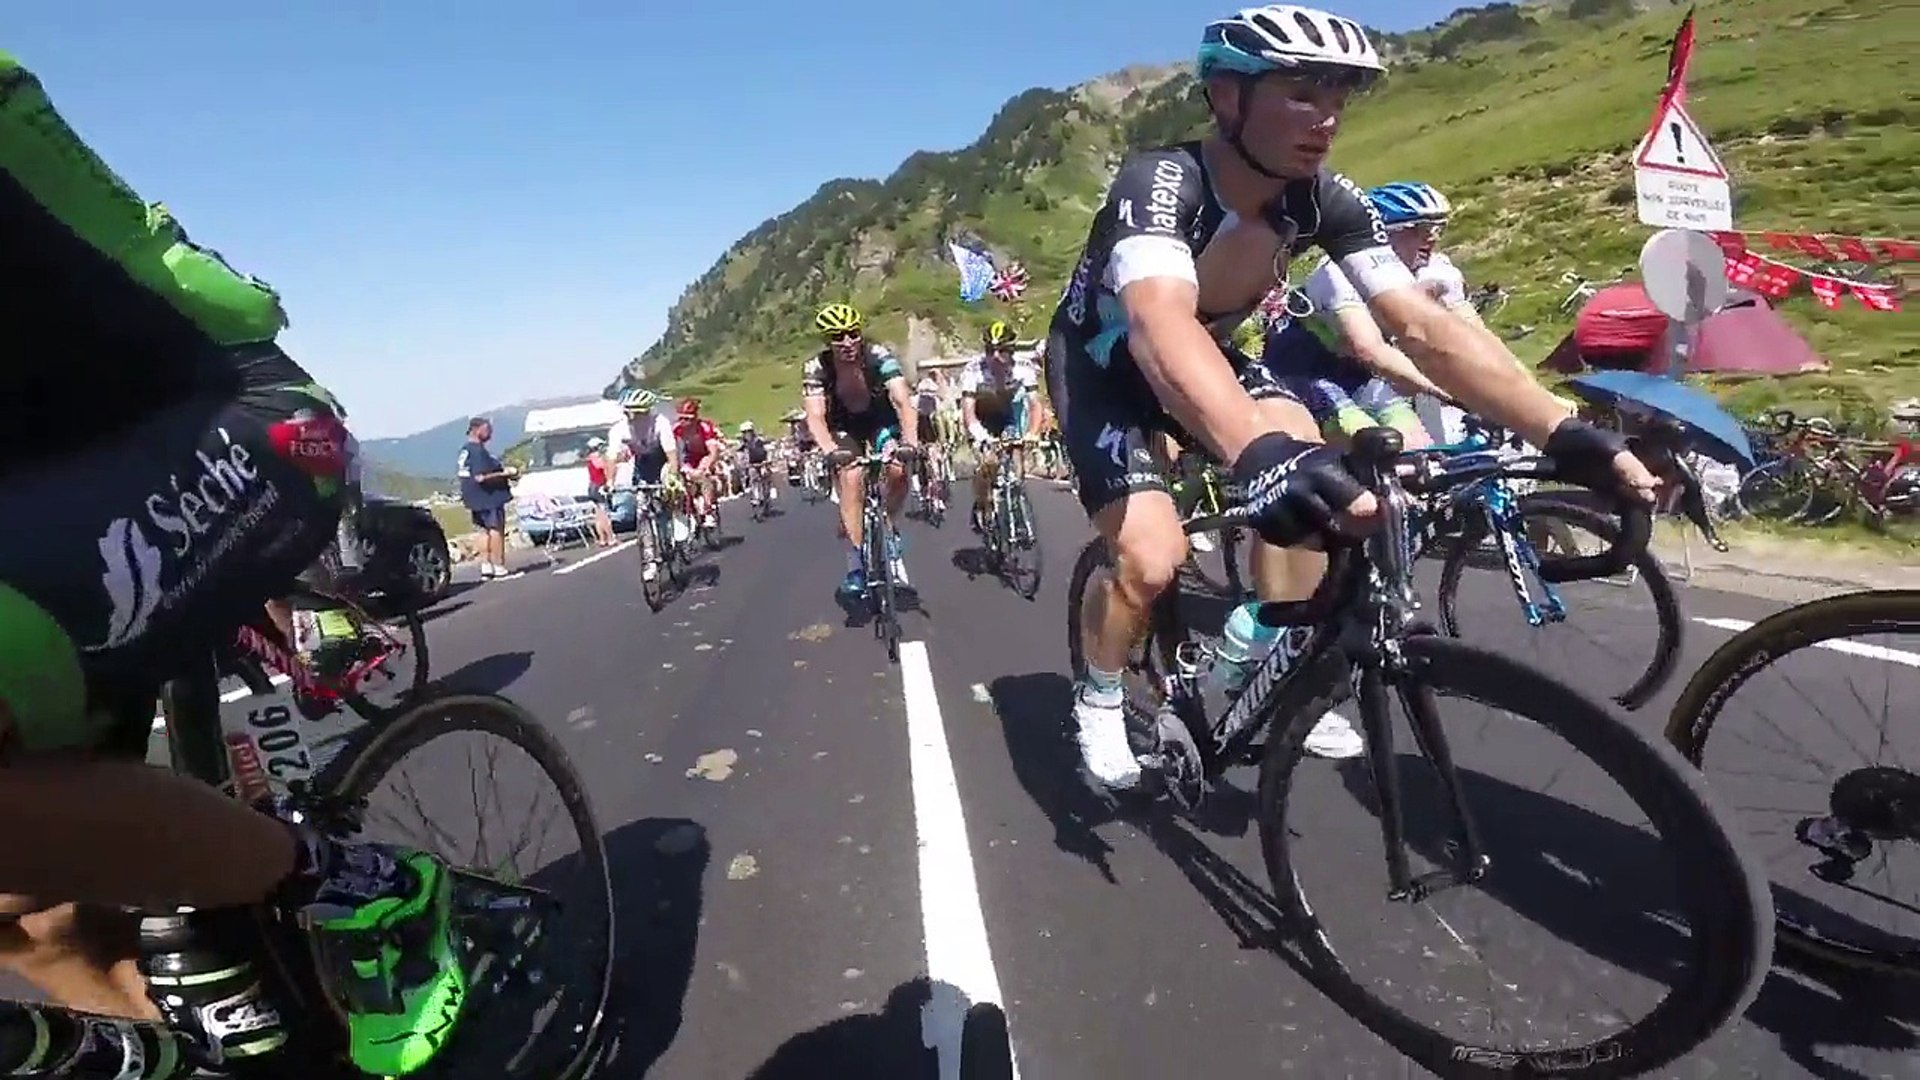 Tour de France - A plus de 100 km/h en descente - Vidéo Dailymotion